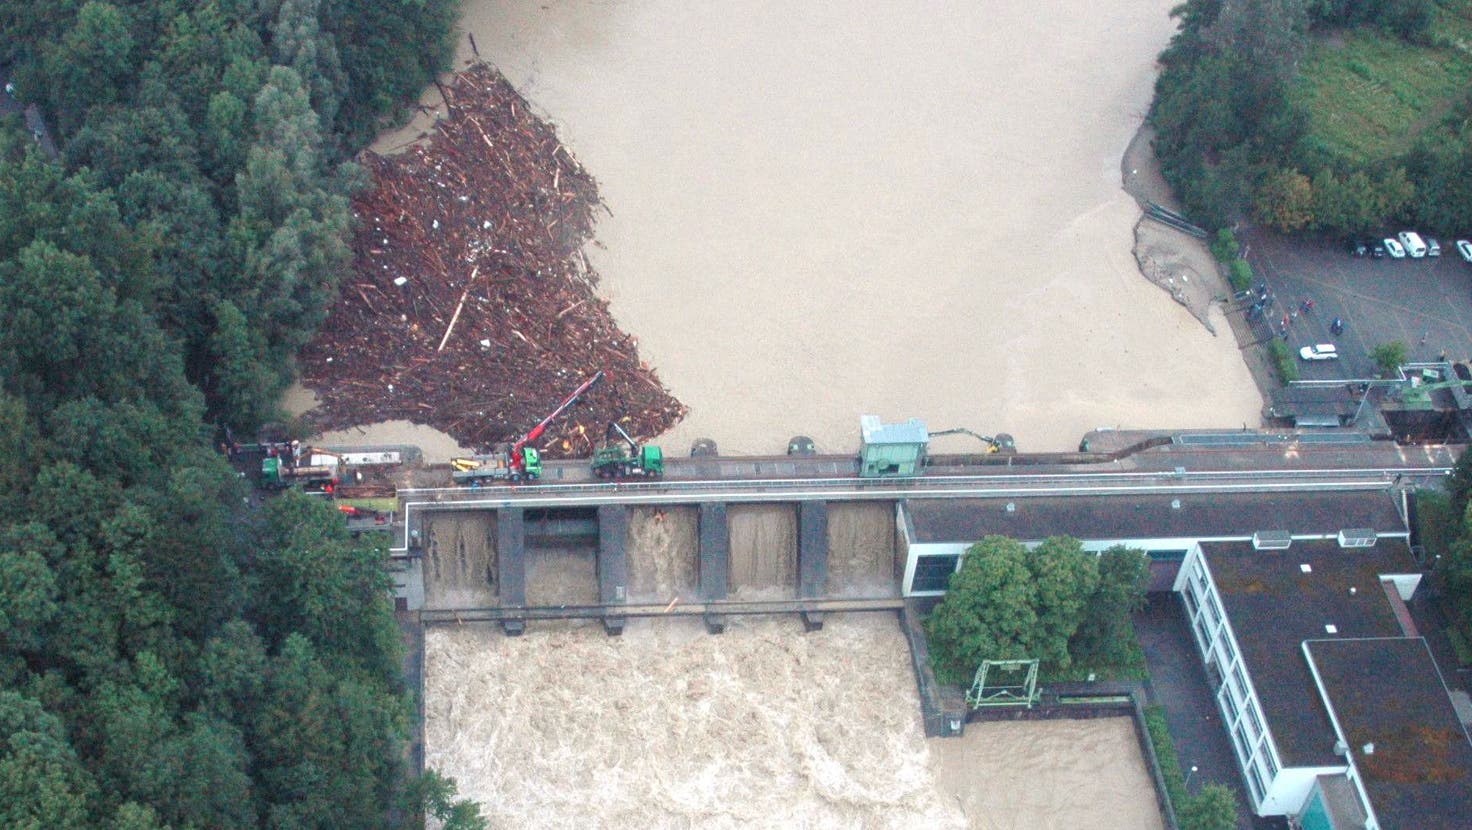 Das Kraftwerk Bremgarten-Zufikon während des Jahrhundert-Hochwassers am 22. August 2005 – die Sicherheitsgrenze wurde damals nicht erreicht. (Bild: Toni Widmer/AGR)